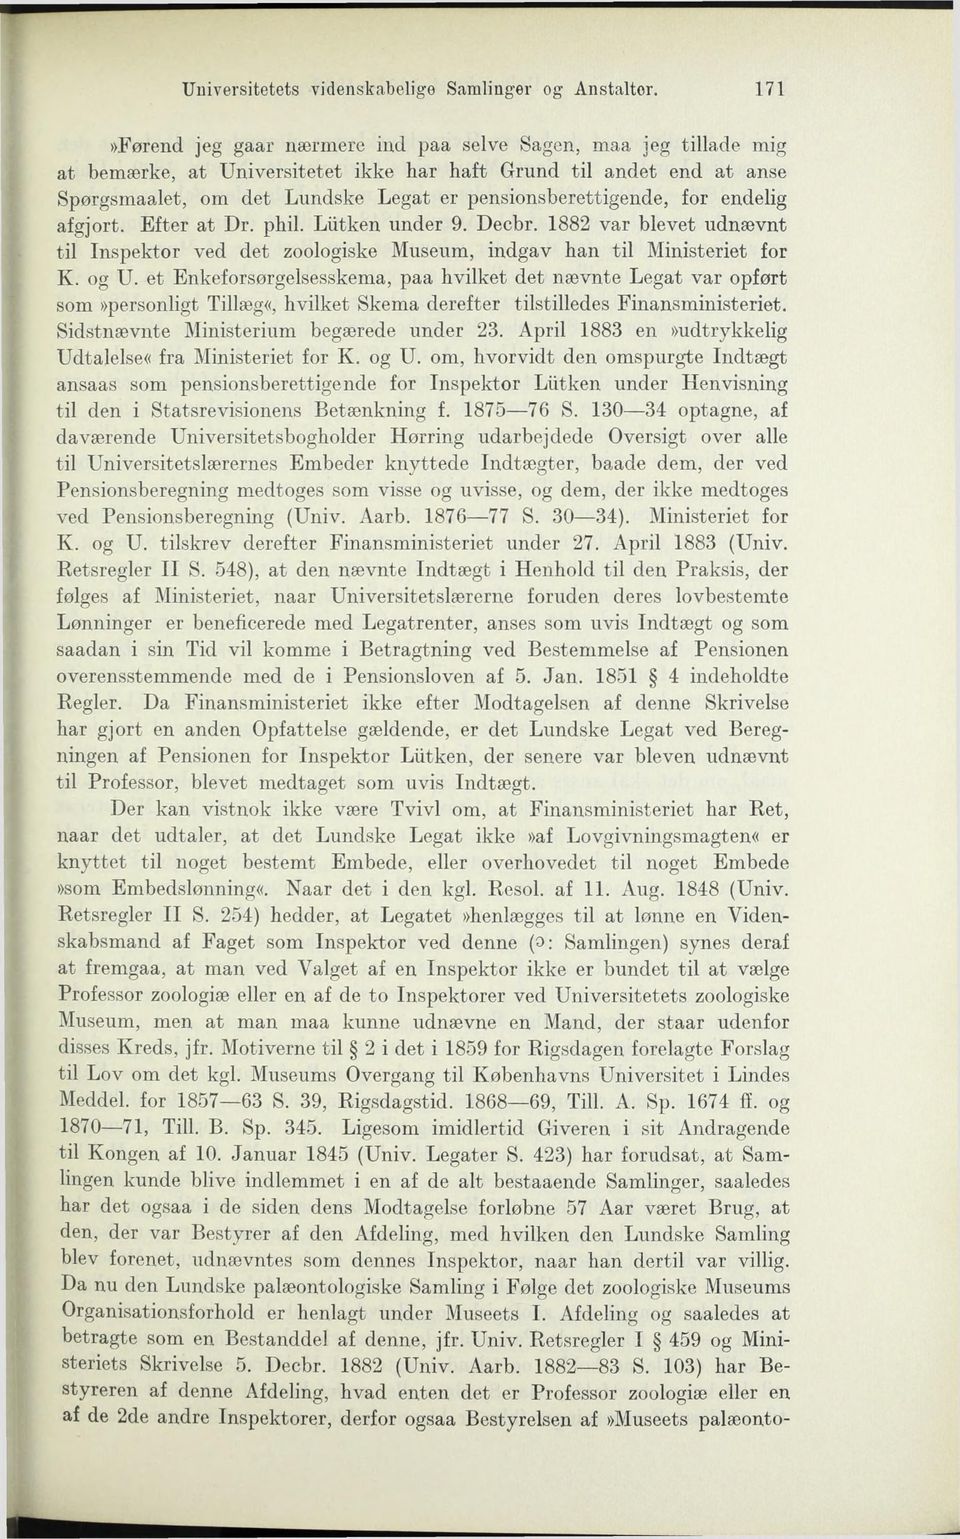 for endelig afgjort. Efter at Dr. phil. Liitken under 9. Decbr. 1882 var blevet udnævnt til Inspektor ved det zoologiske Museum, indgav han til Ministeriet for K. og U.